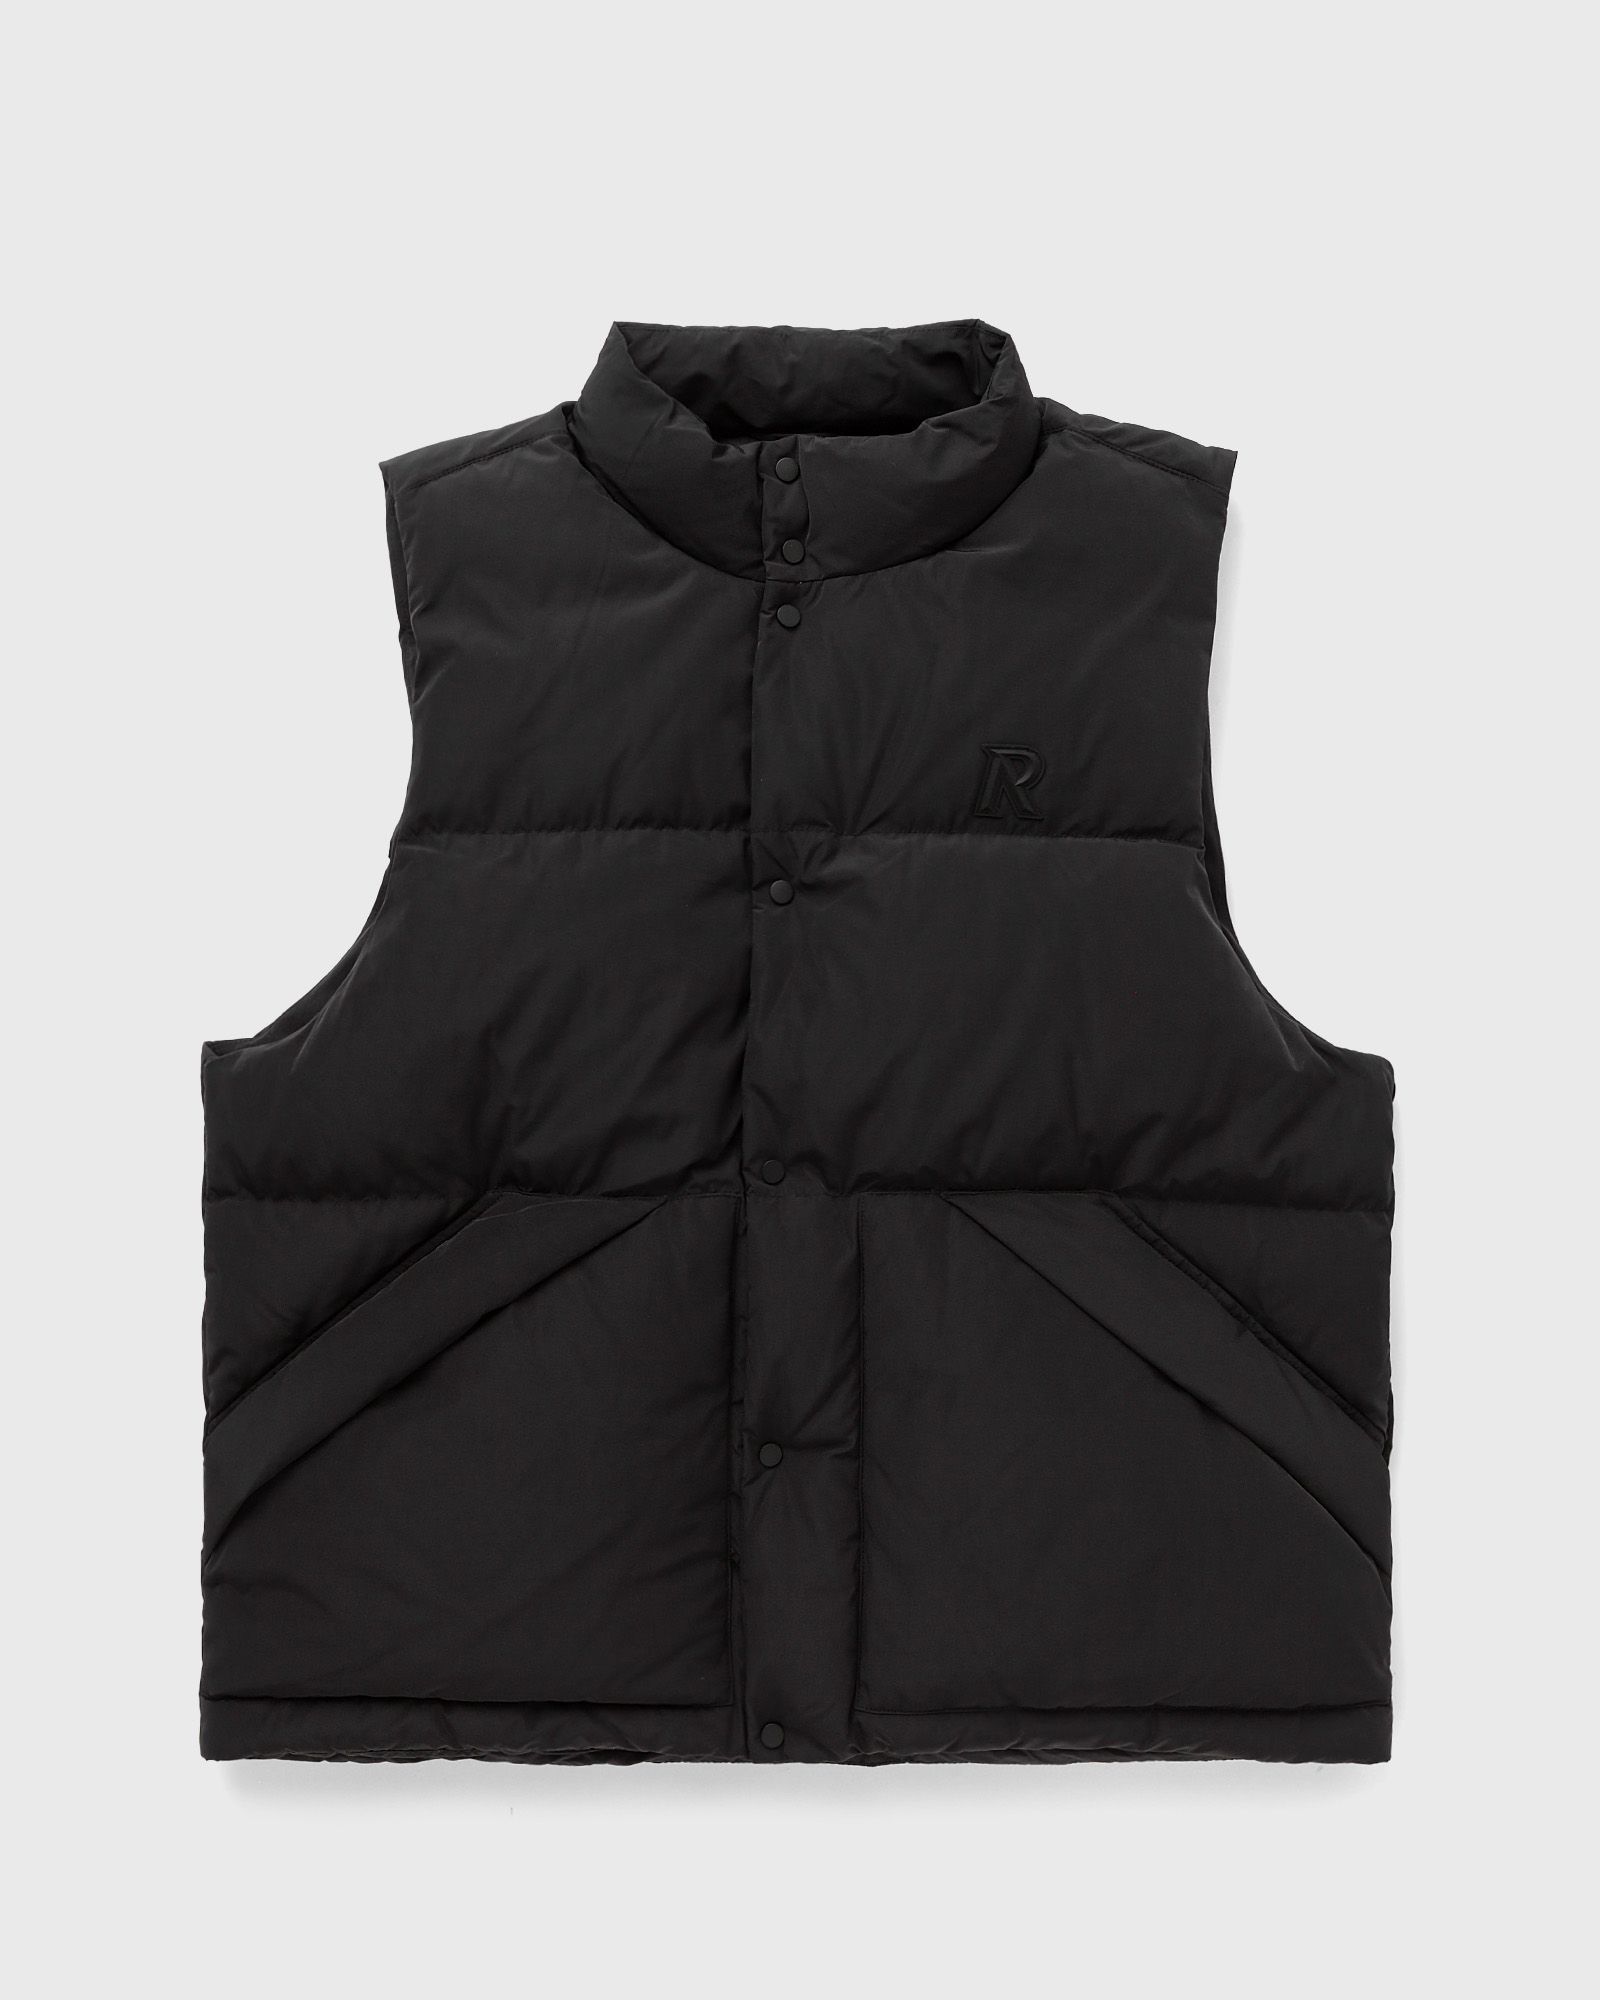 Represent - puffer gilet men vests black in größe:m